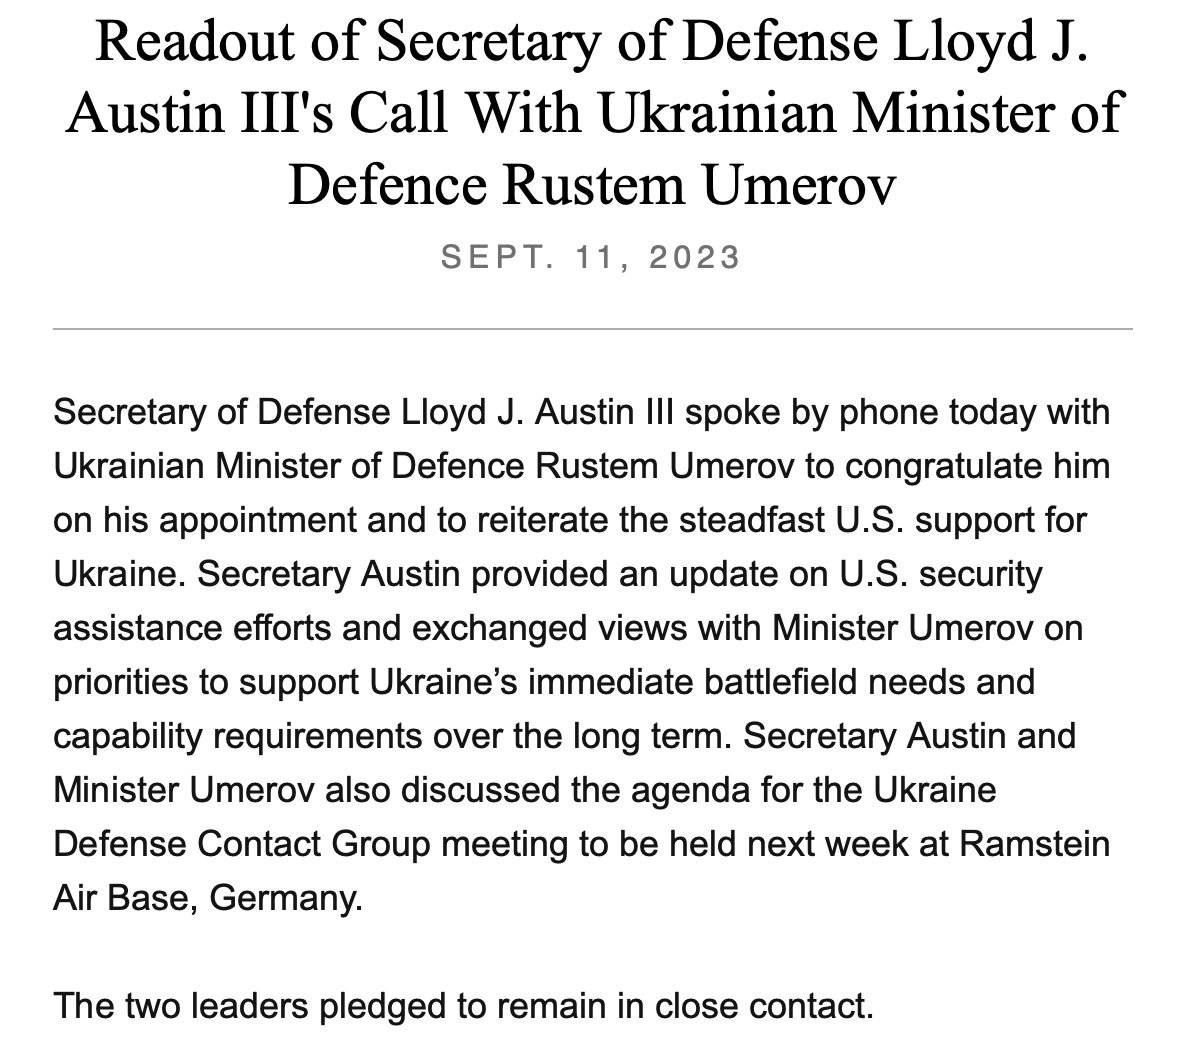 US @SecDef Lloyd Austin sprach am Montag mit dem neuen ukrainischen Verteidigungsminister Rustem Umerov, per @DeptofDefense. Der Aufruf bestand darin, „die unerschütterliche Unterstützung der USA für die Ukraine zu bekräftigen und Umerov auch über den aktuellen Stand der US-Hilfe zu informieren